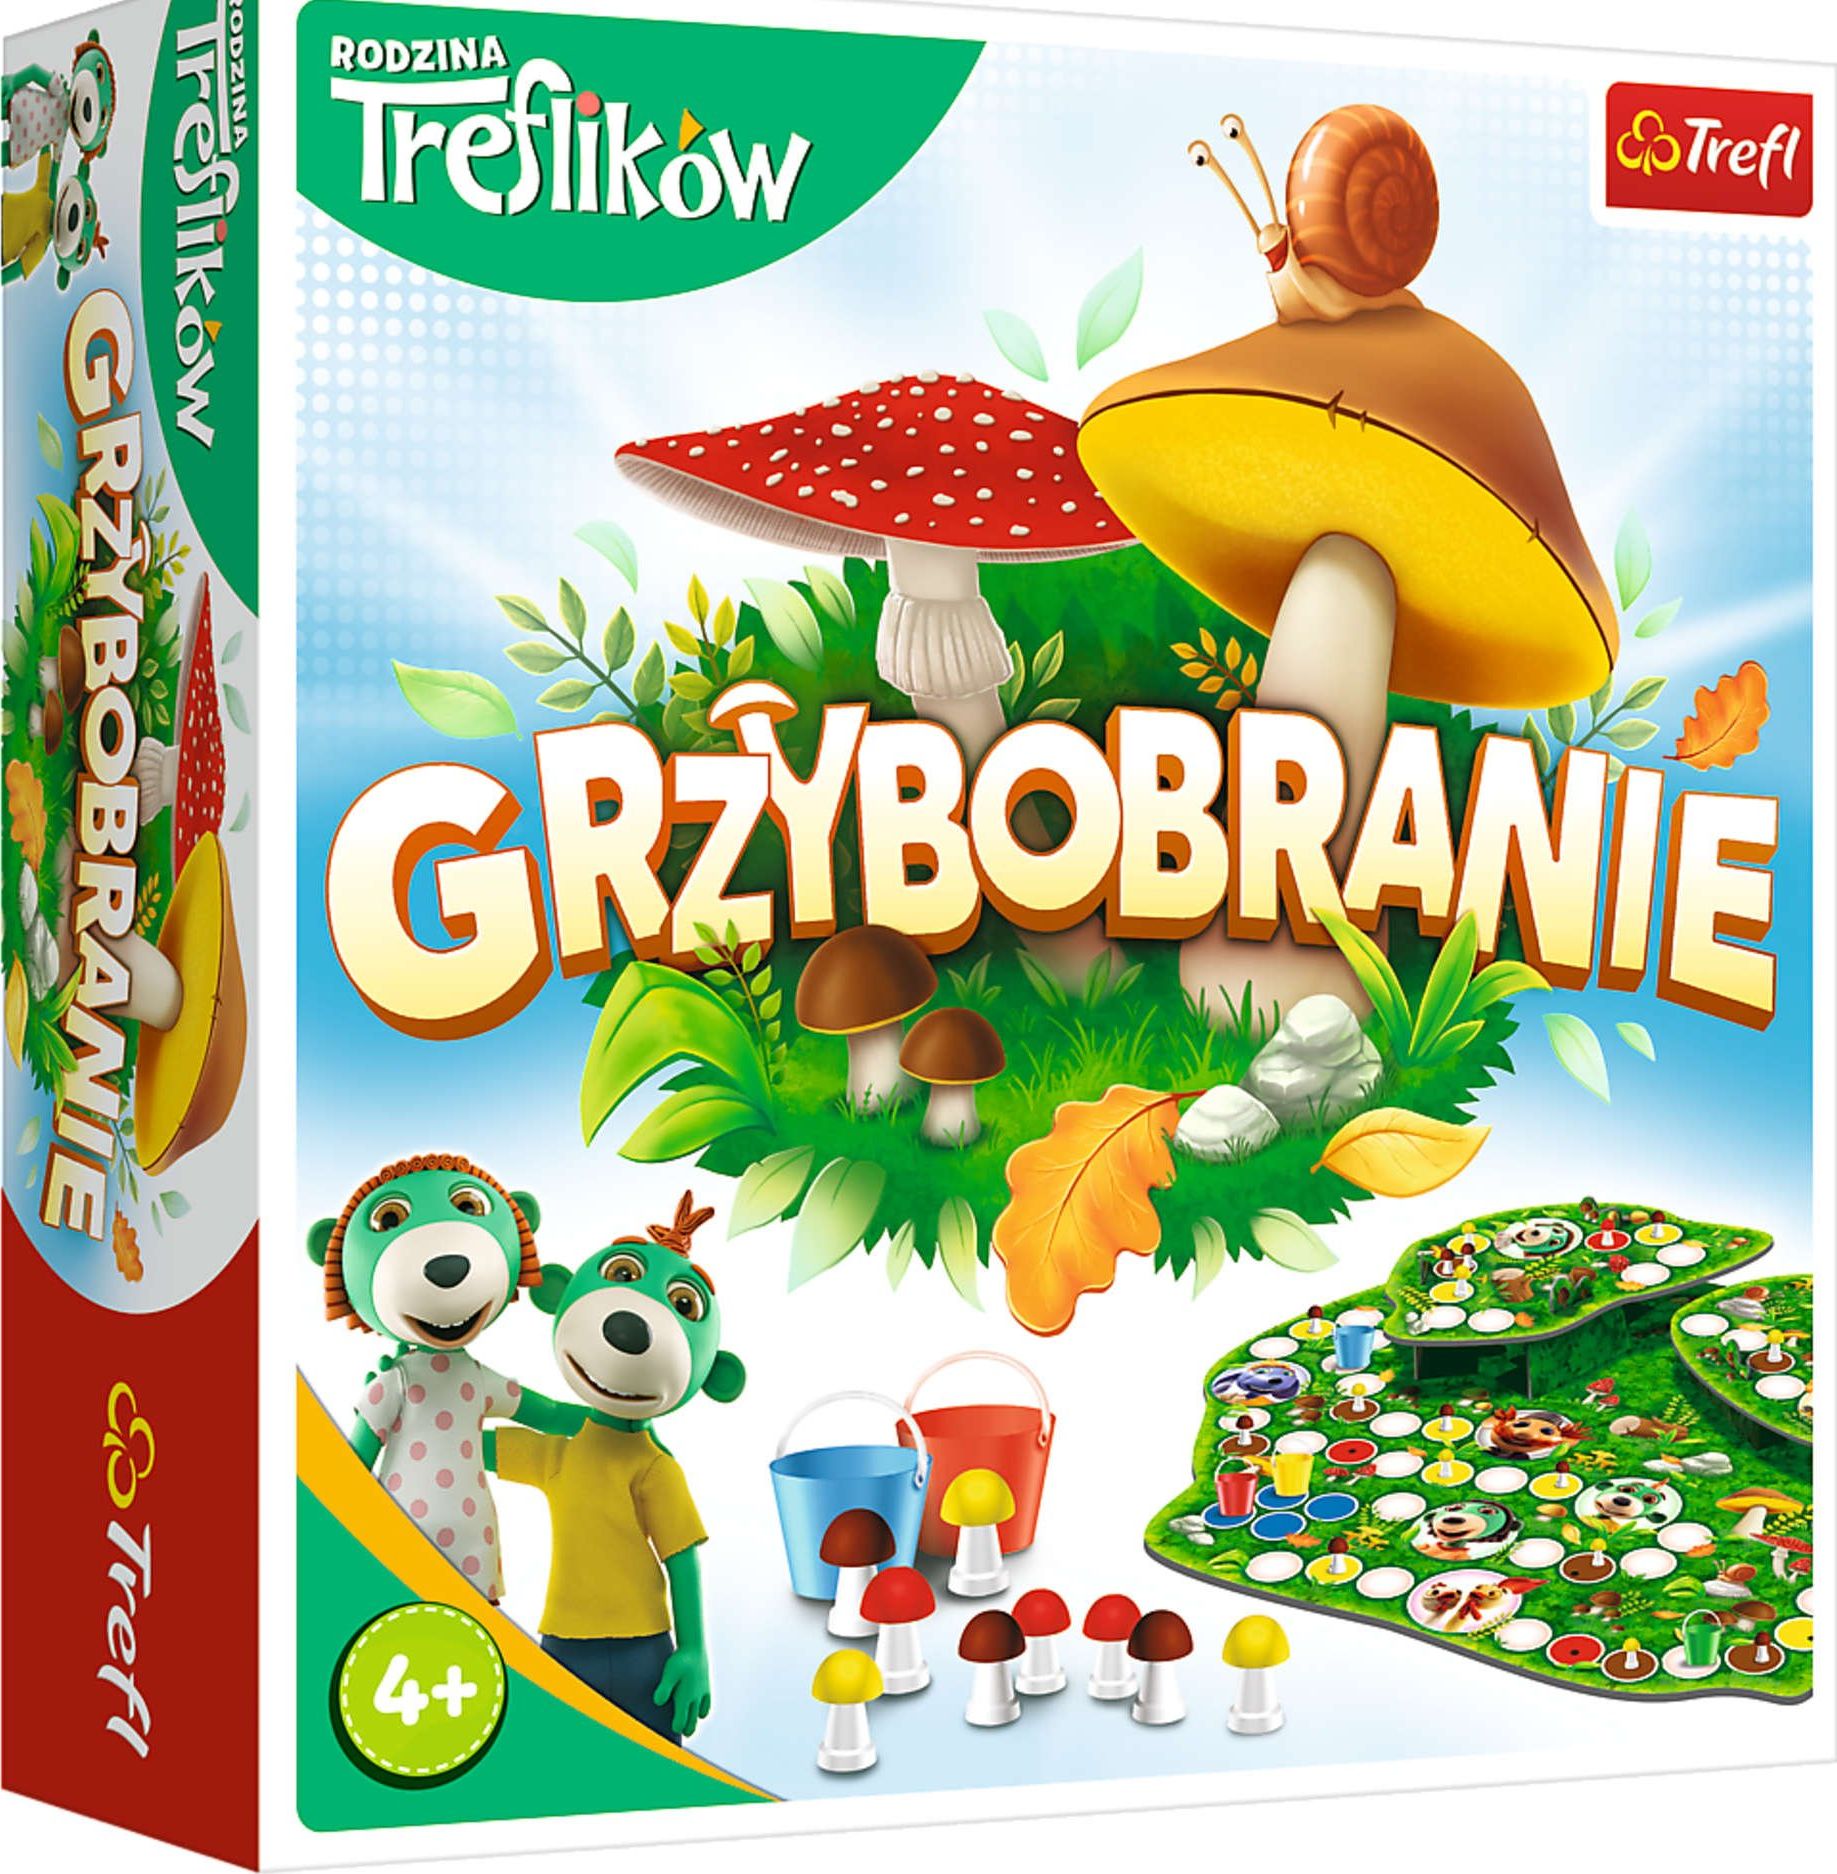 Trefl Gra planszowa Rodzina Treflikow - Grzybobranie 387964 (5900511020359) galda spēle